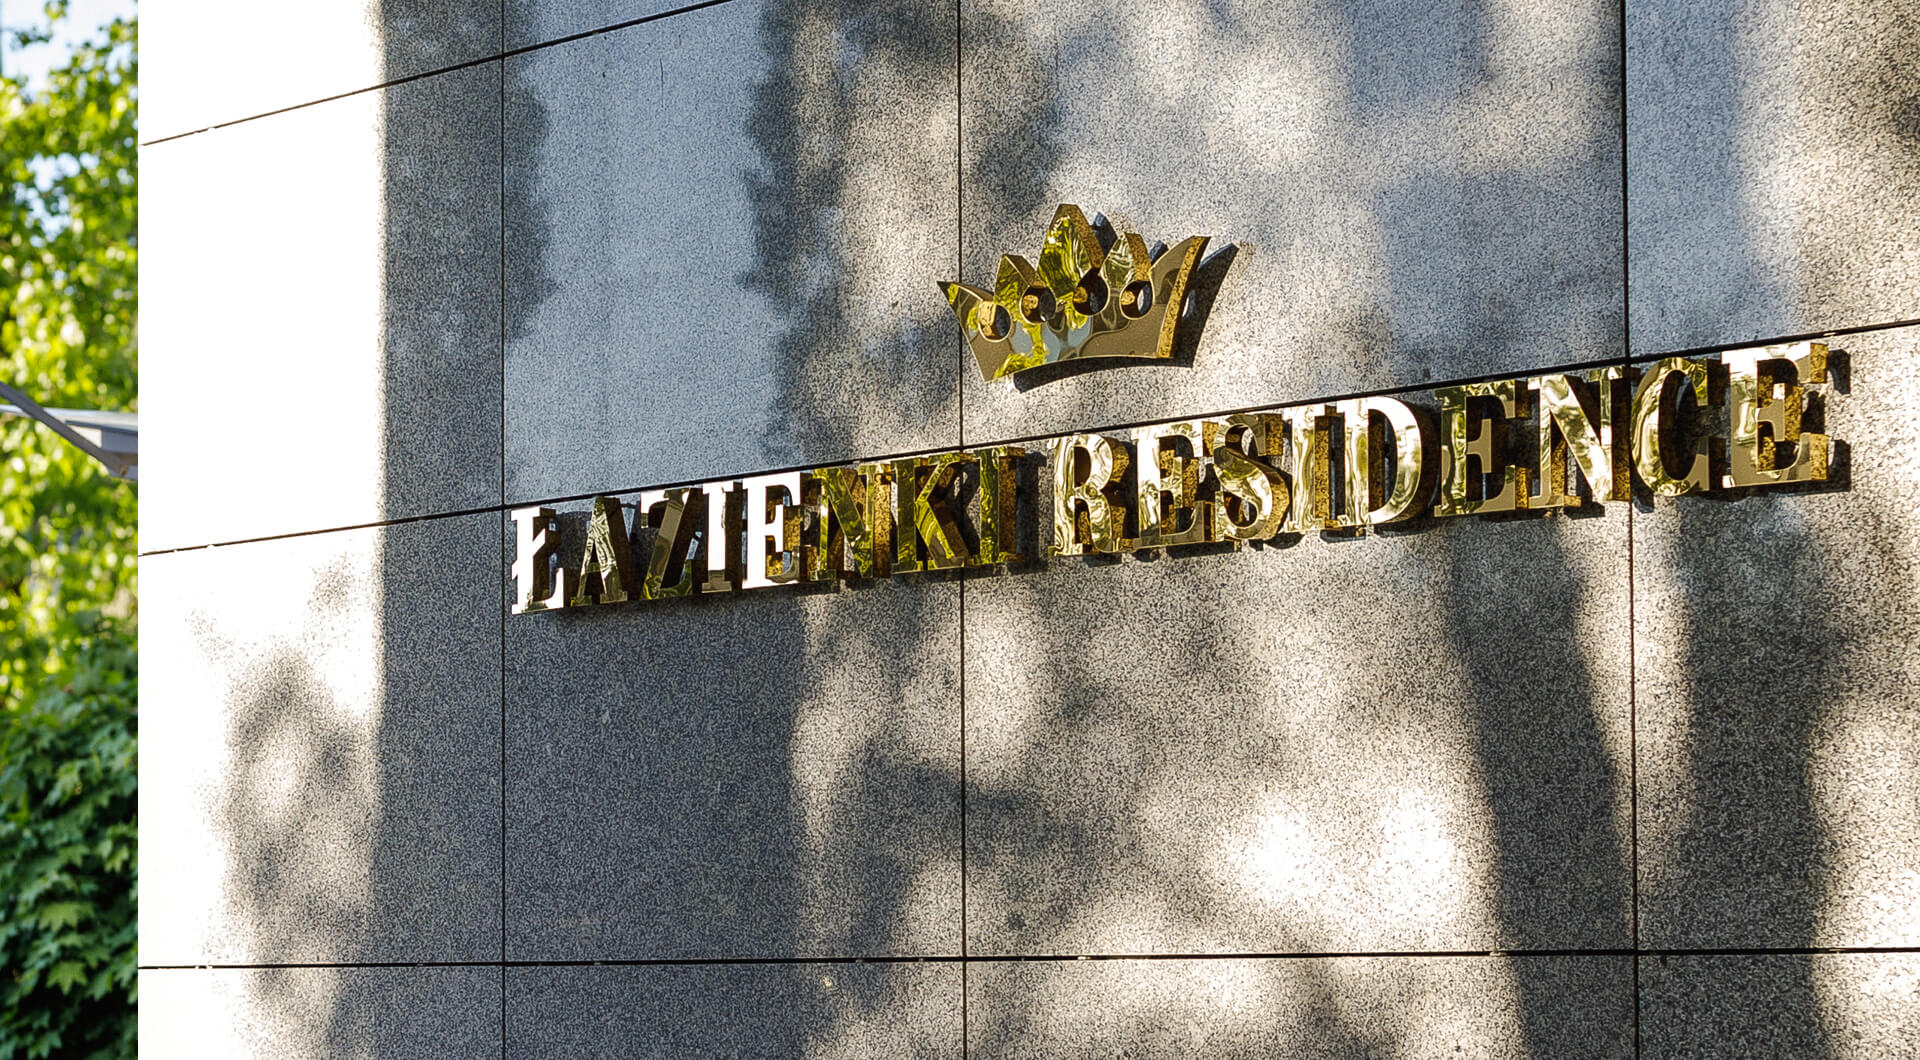 Łazienki Residence - Napis Łazienki Residence wykonany z blachy nierdzewnej w kolorze złotym, z koroną w logo.